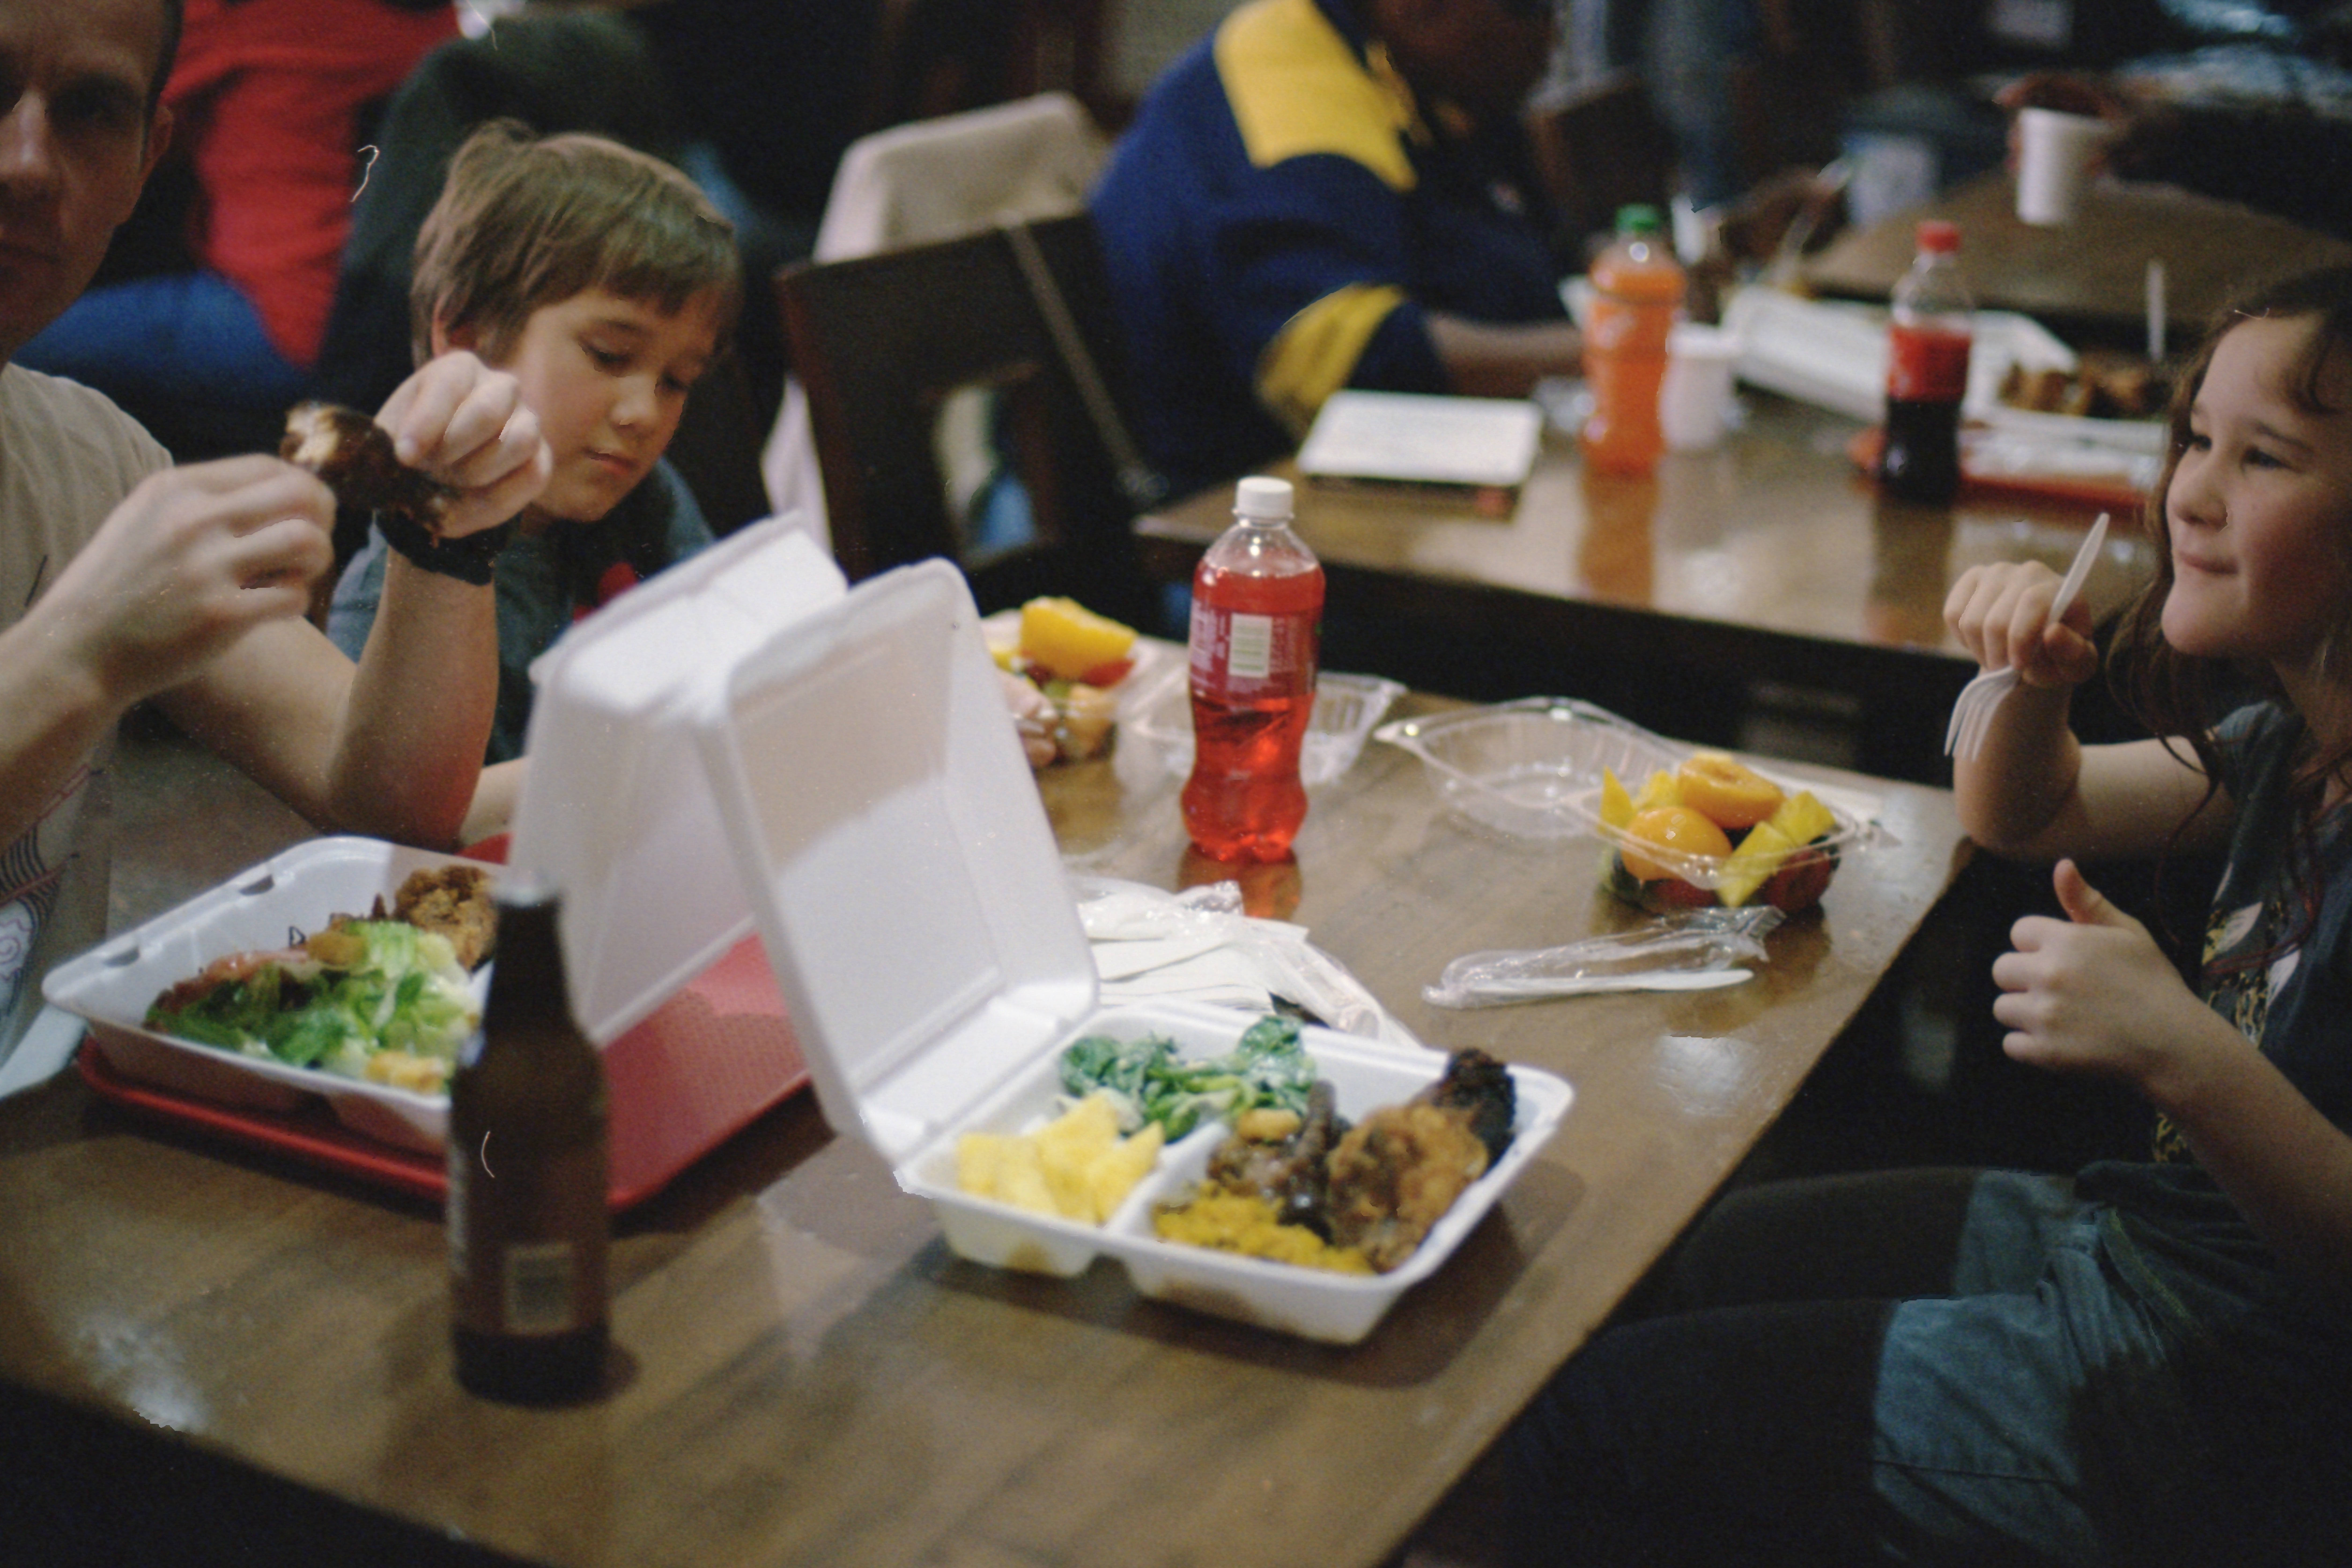 Kinder beim Essen mit ihrer Familie | Quelle: Unsplash